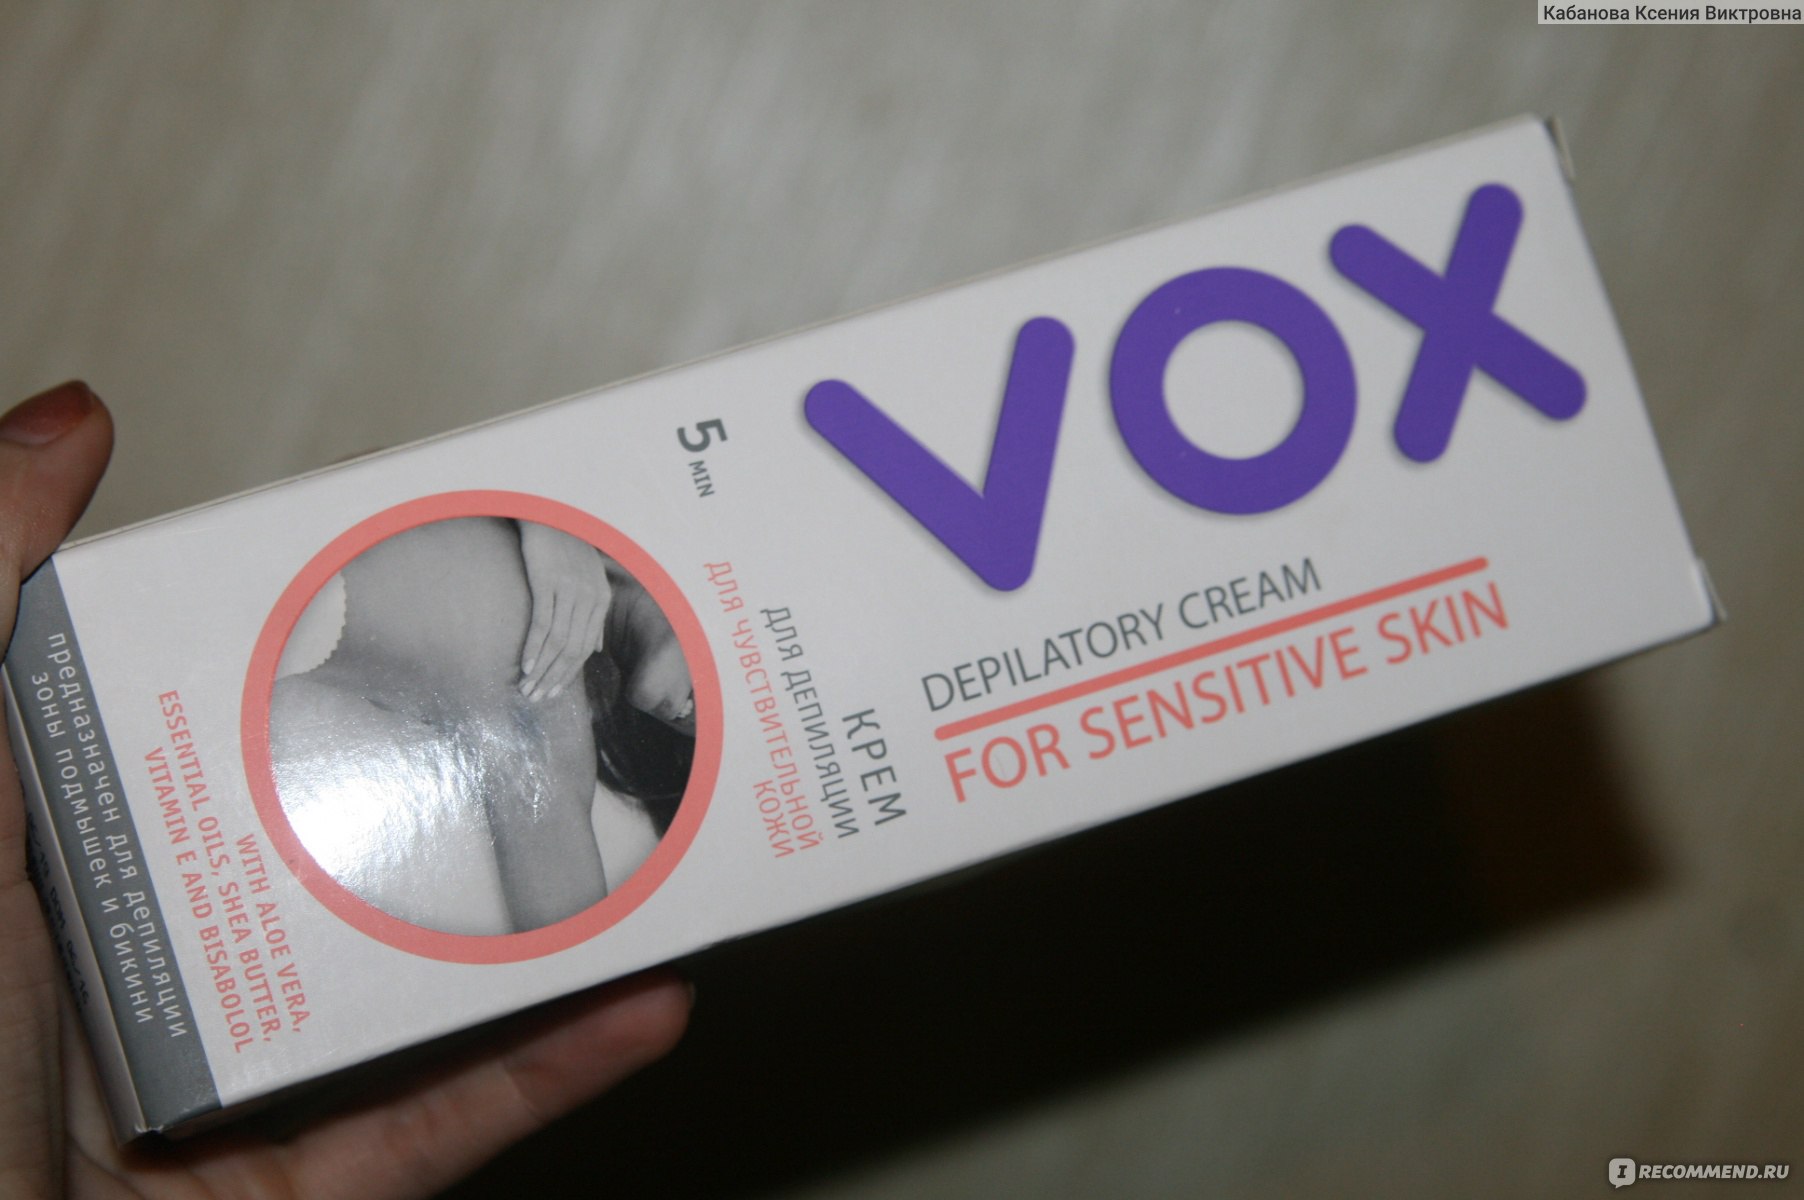 Крем для депиляции vox для нормальной кожи 100 мл